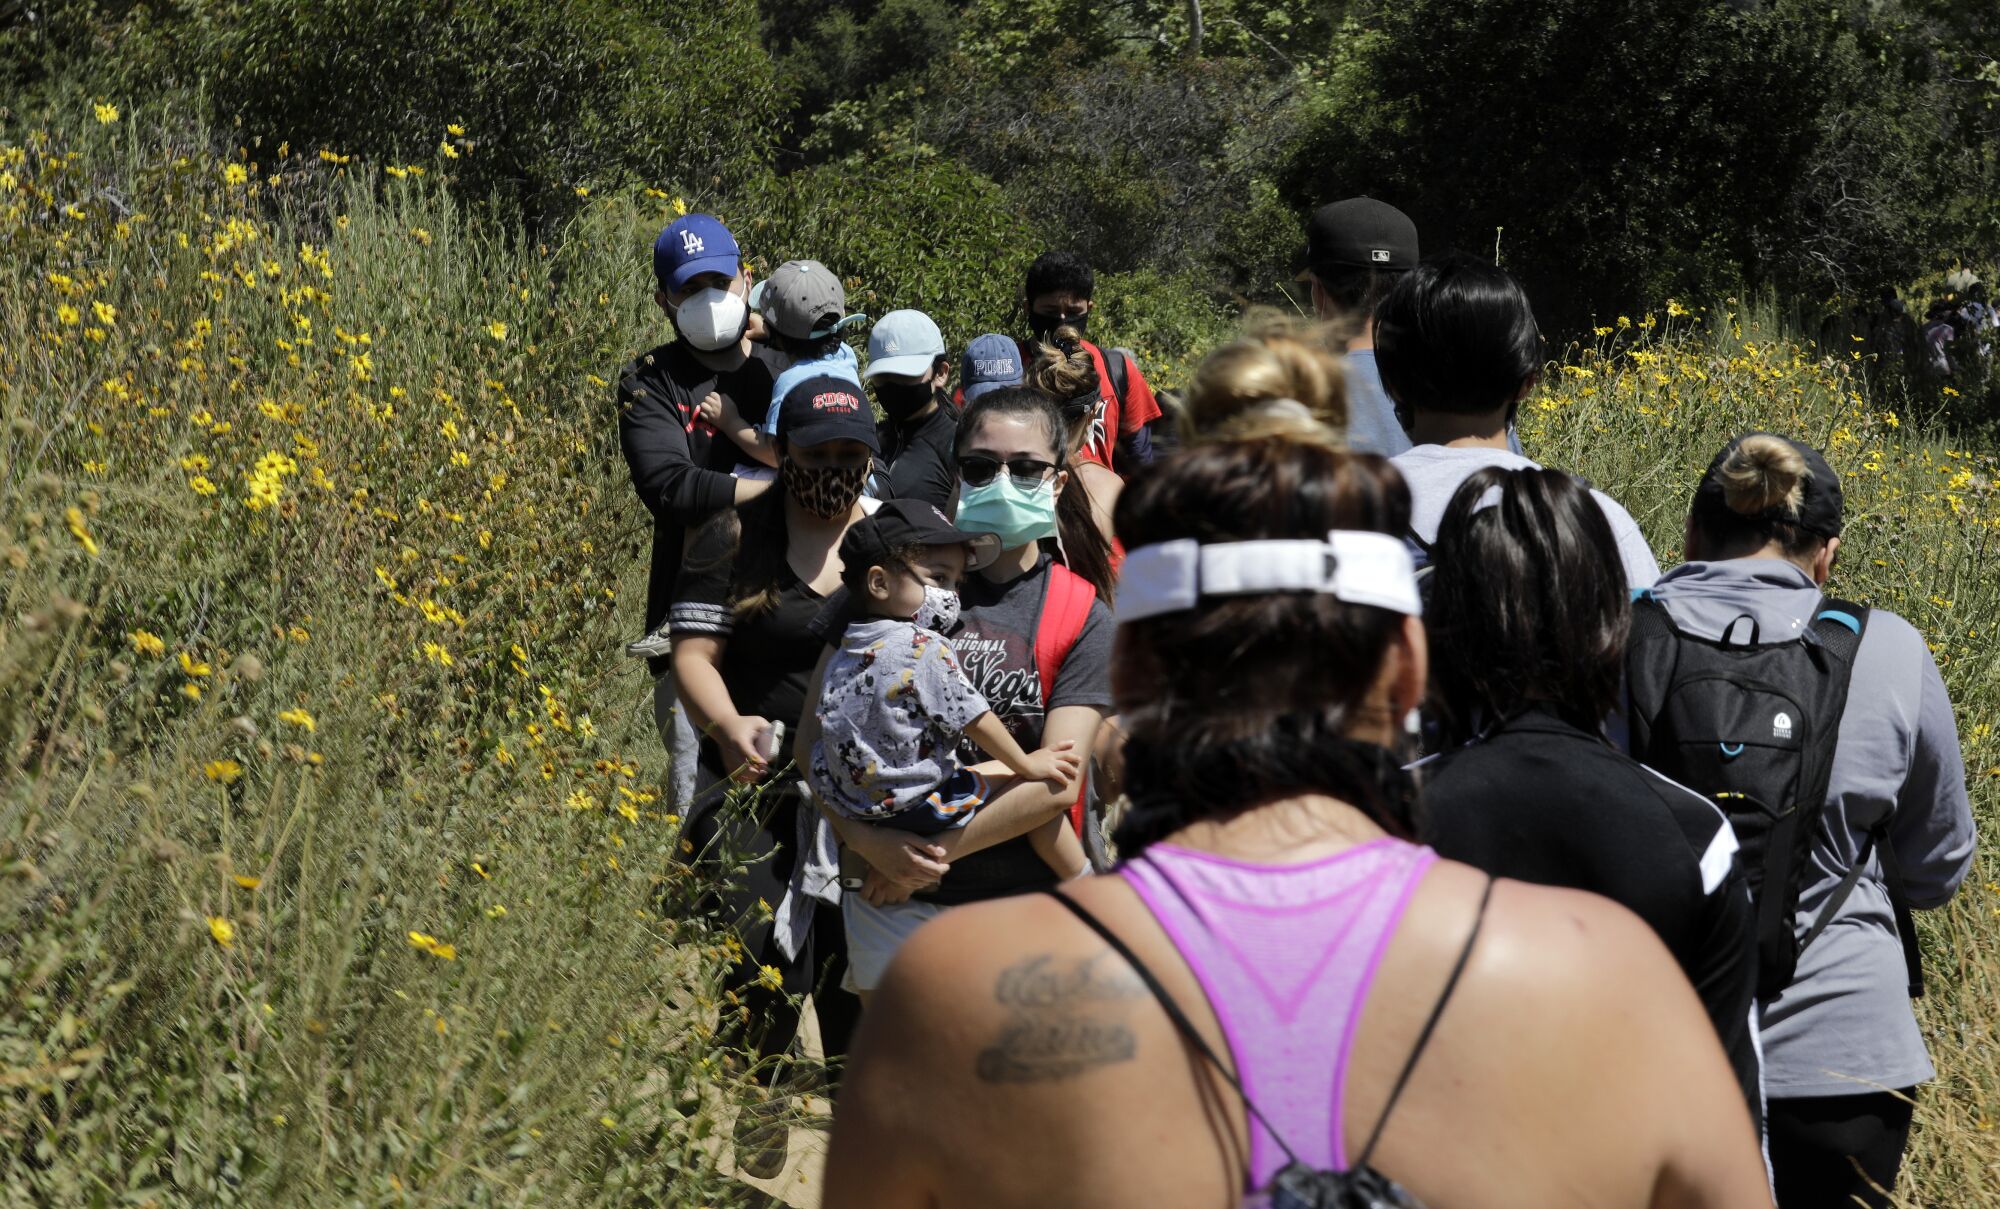 Visitors share a narrow hiking path at Eaton Canyon Natural Area Park on May 24.